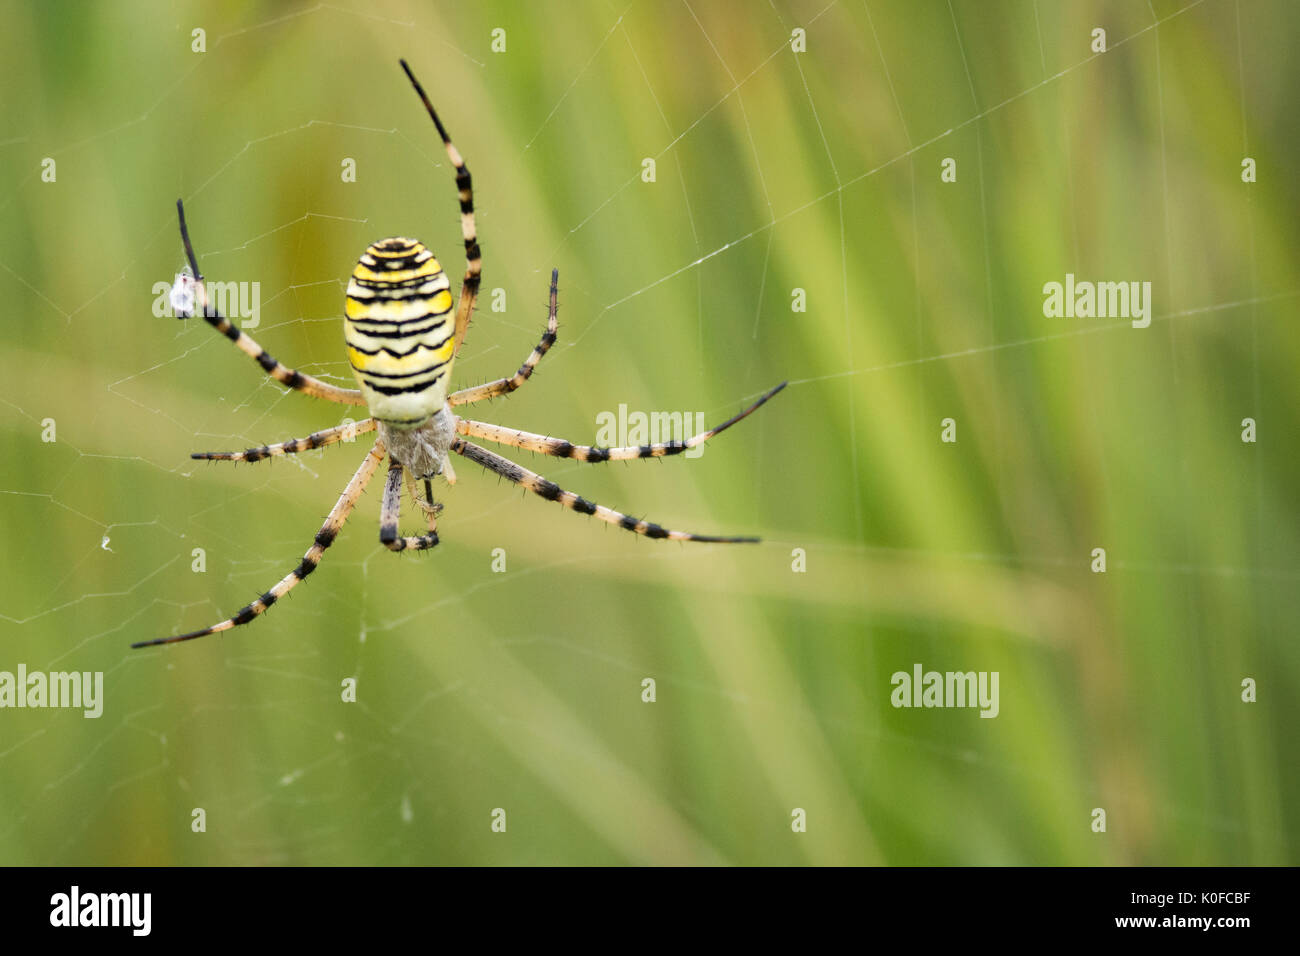 Argiope wasp spider Stock Photo